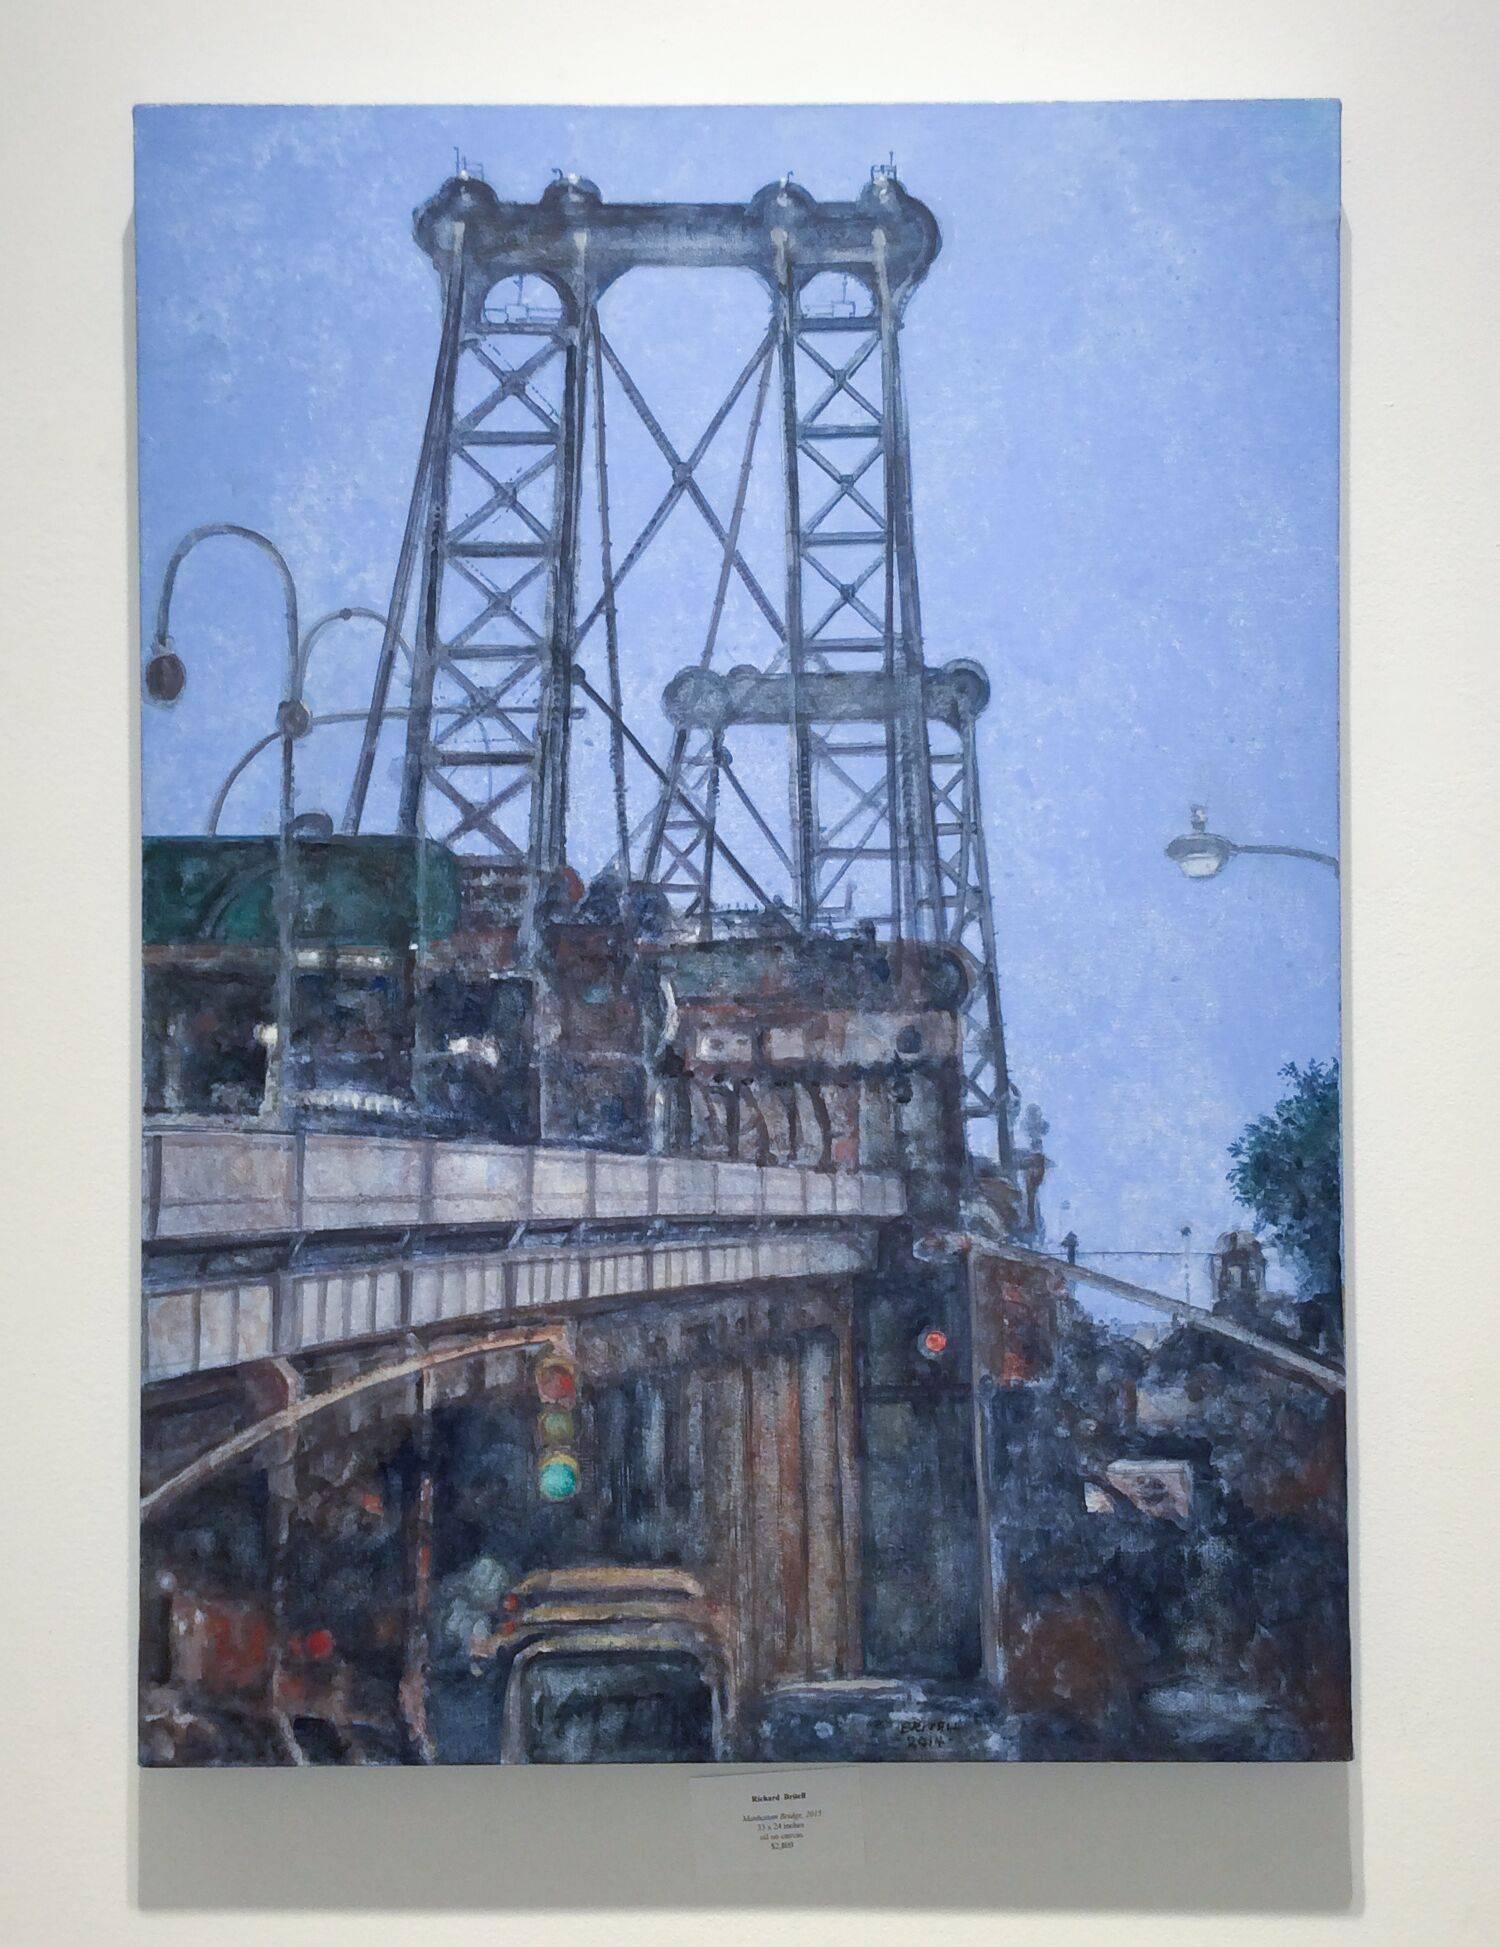 Le pont de Manhattan (peinture de paysage urbain moderne et vertical du pont de New York et du ciel bleu) - Painting de Richard Britell